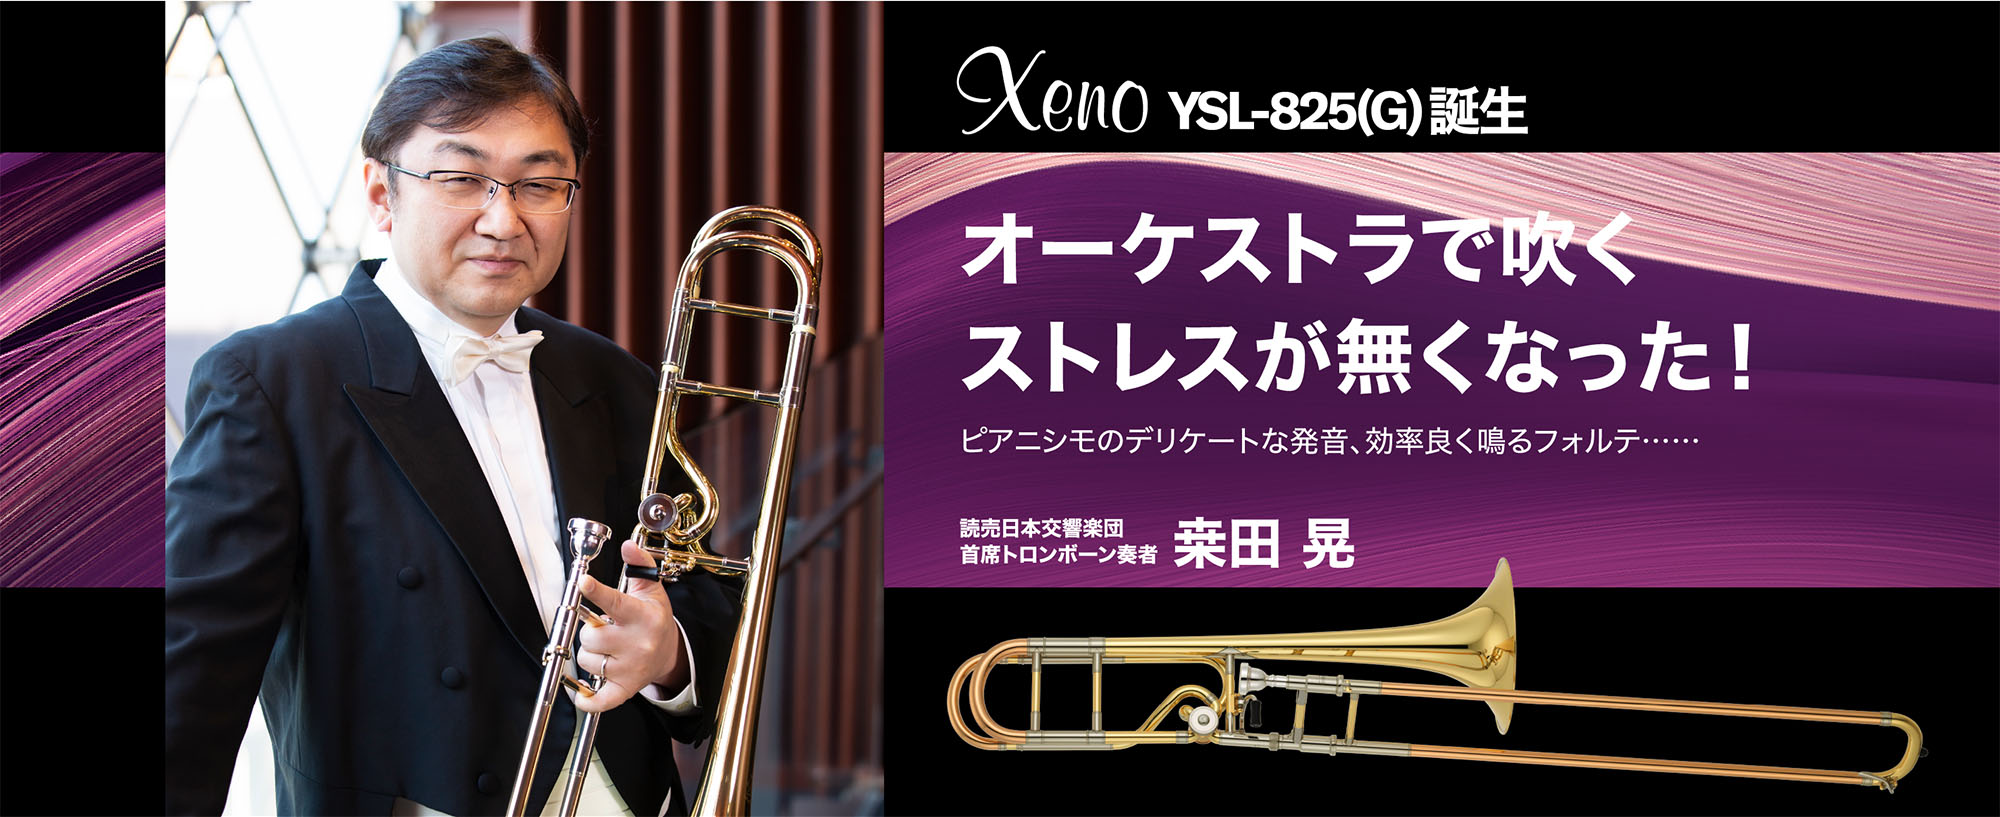 Xeno YSL-825(G) 誕生 - オーケストラで吹くストレスが無くなった！ - ピアニシモのデリケートな発音、効率良く鳴るフォルテ…… -読売日本交響楽団 首席トロンボーン奏者 桒田 晃